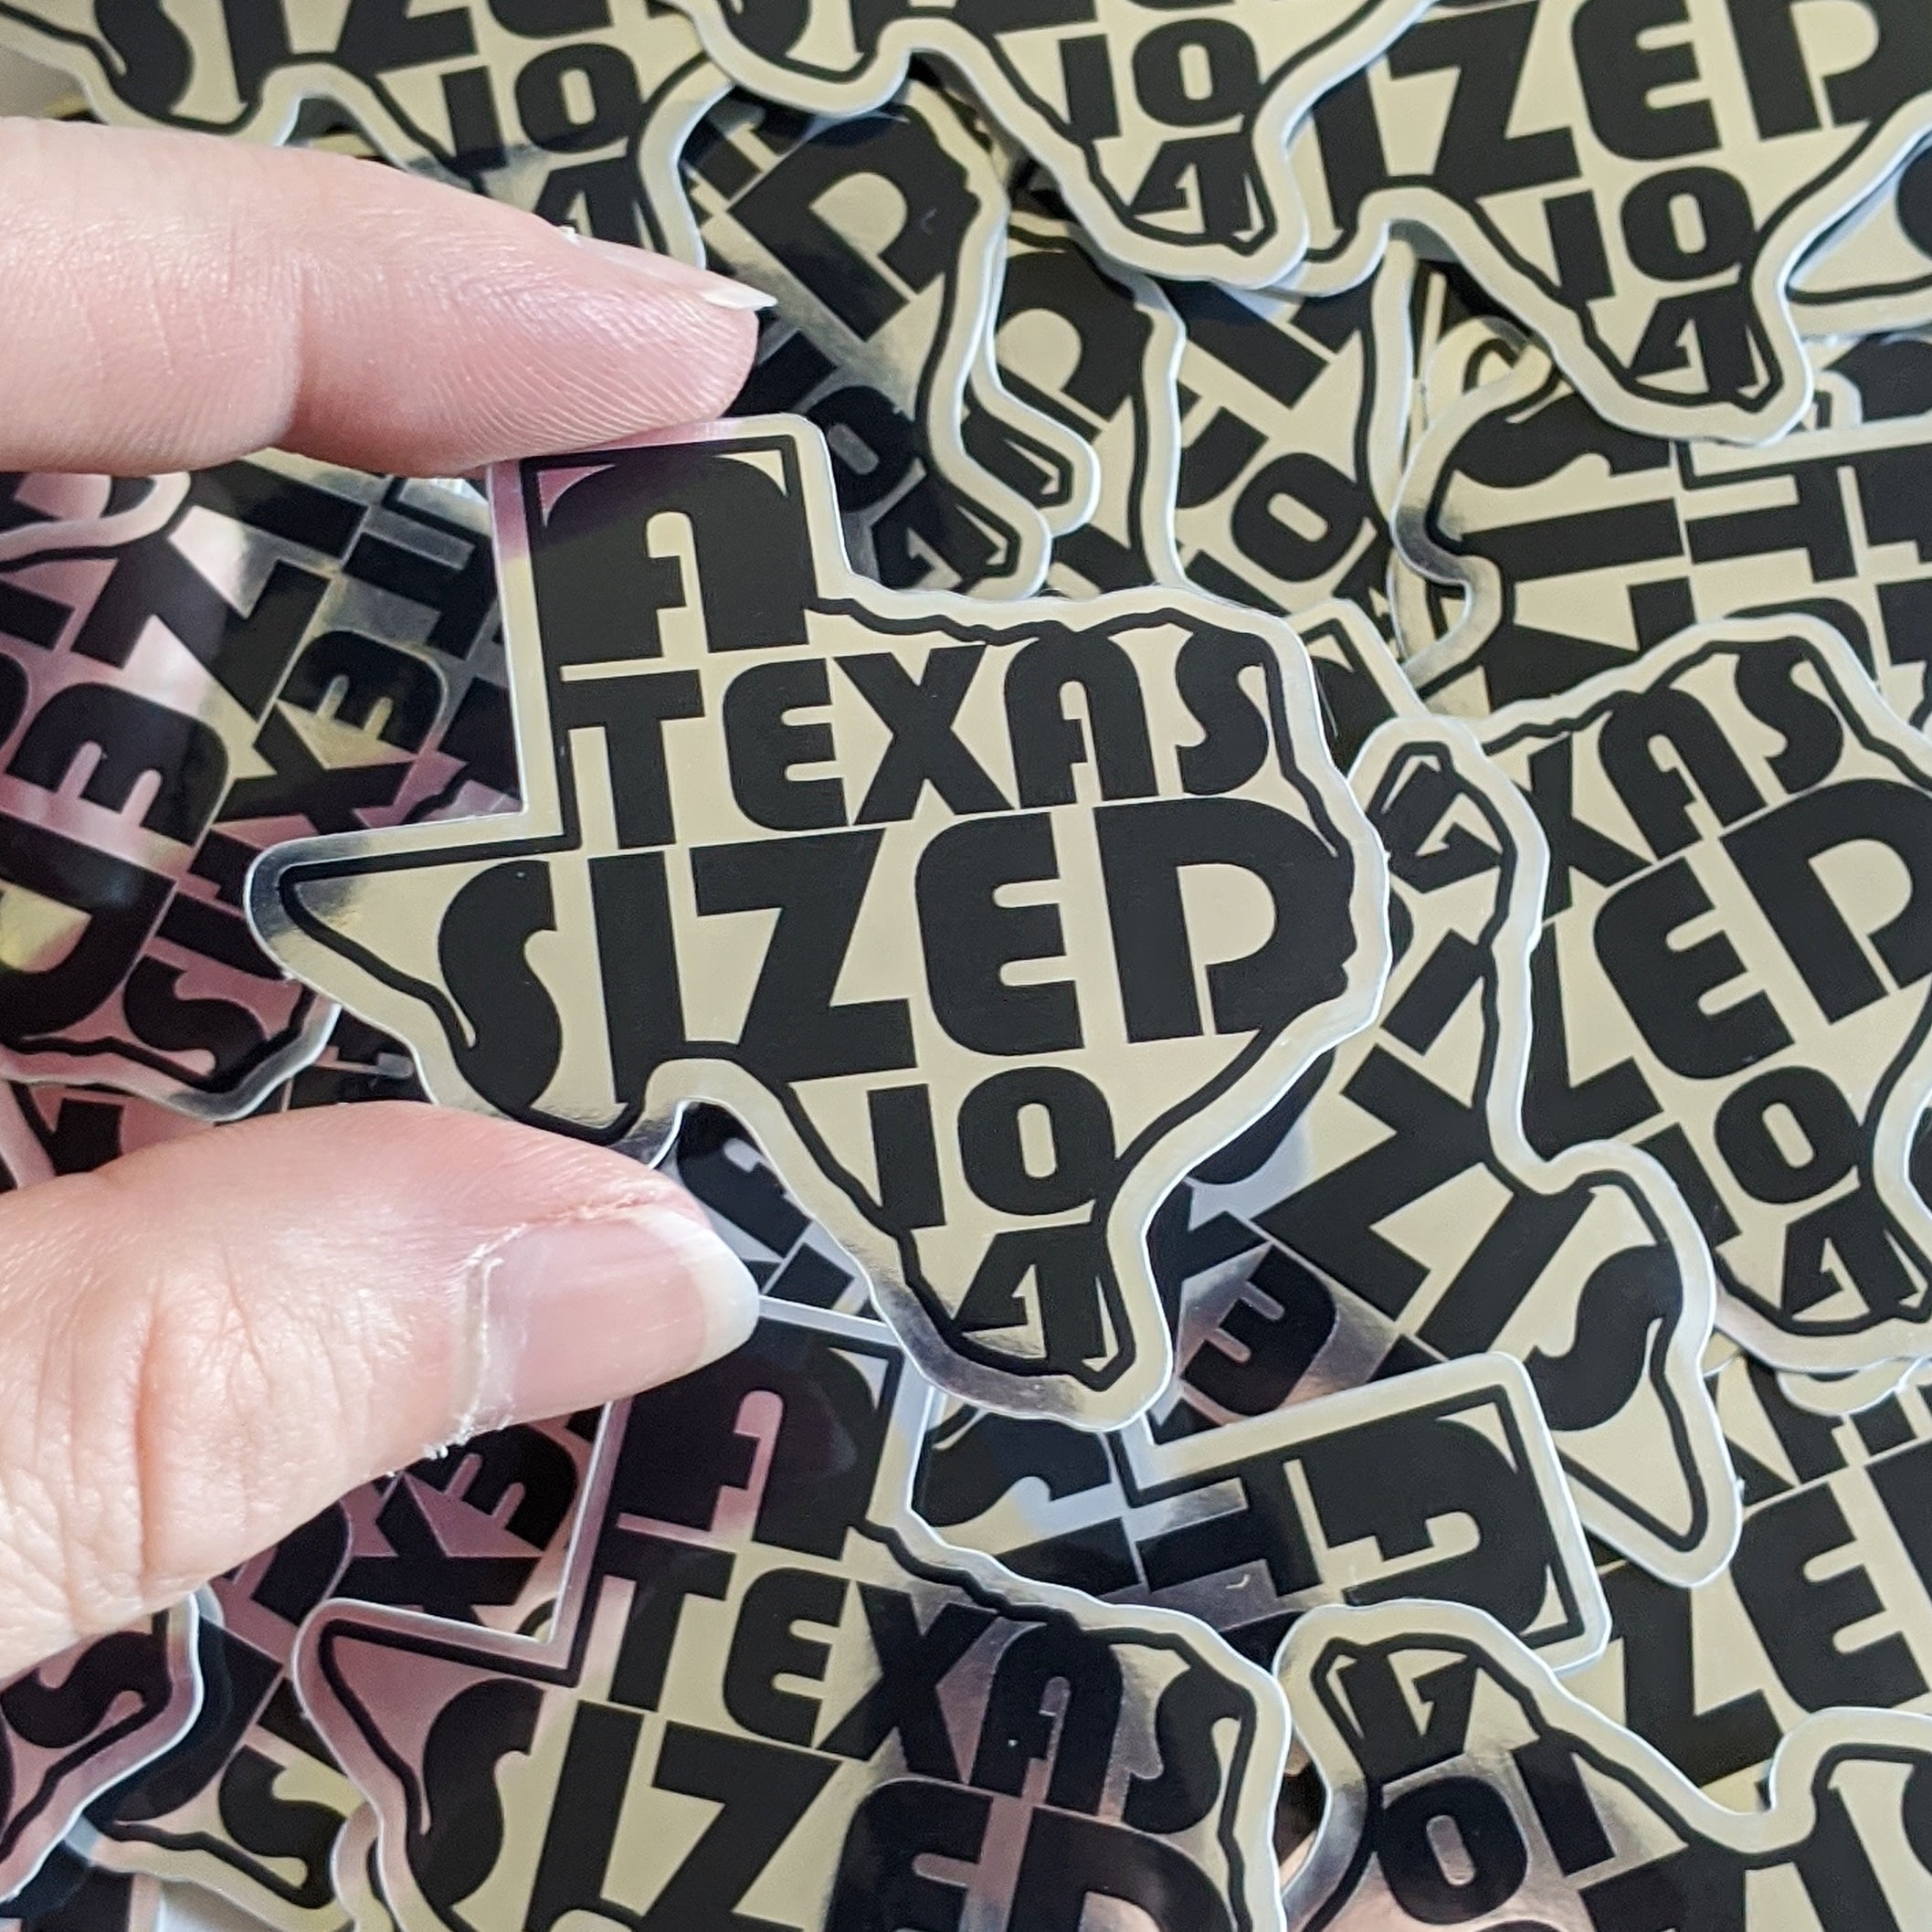 A Texas-sized 10-4 sticker